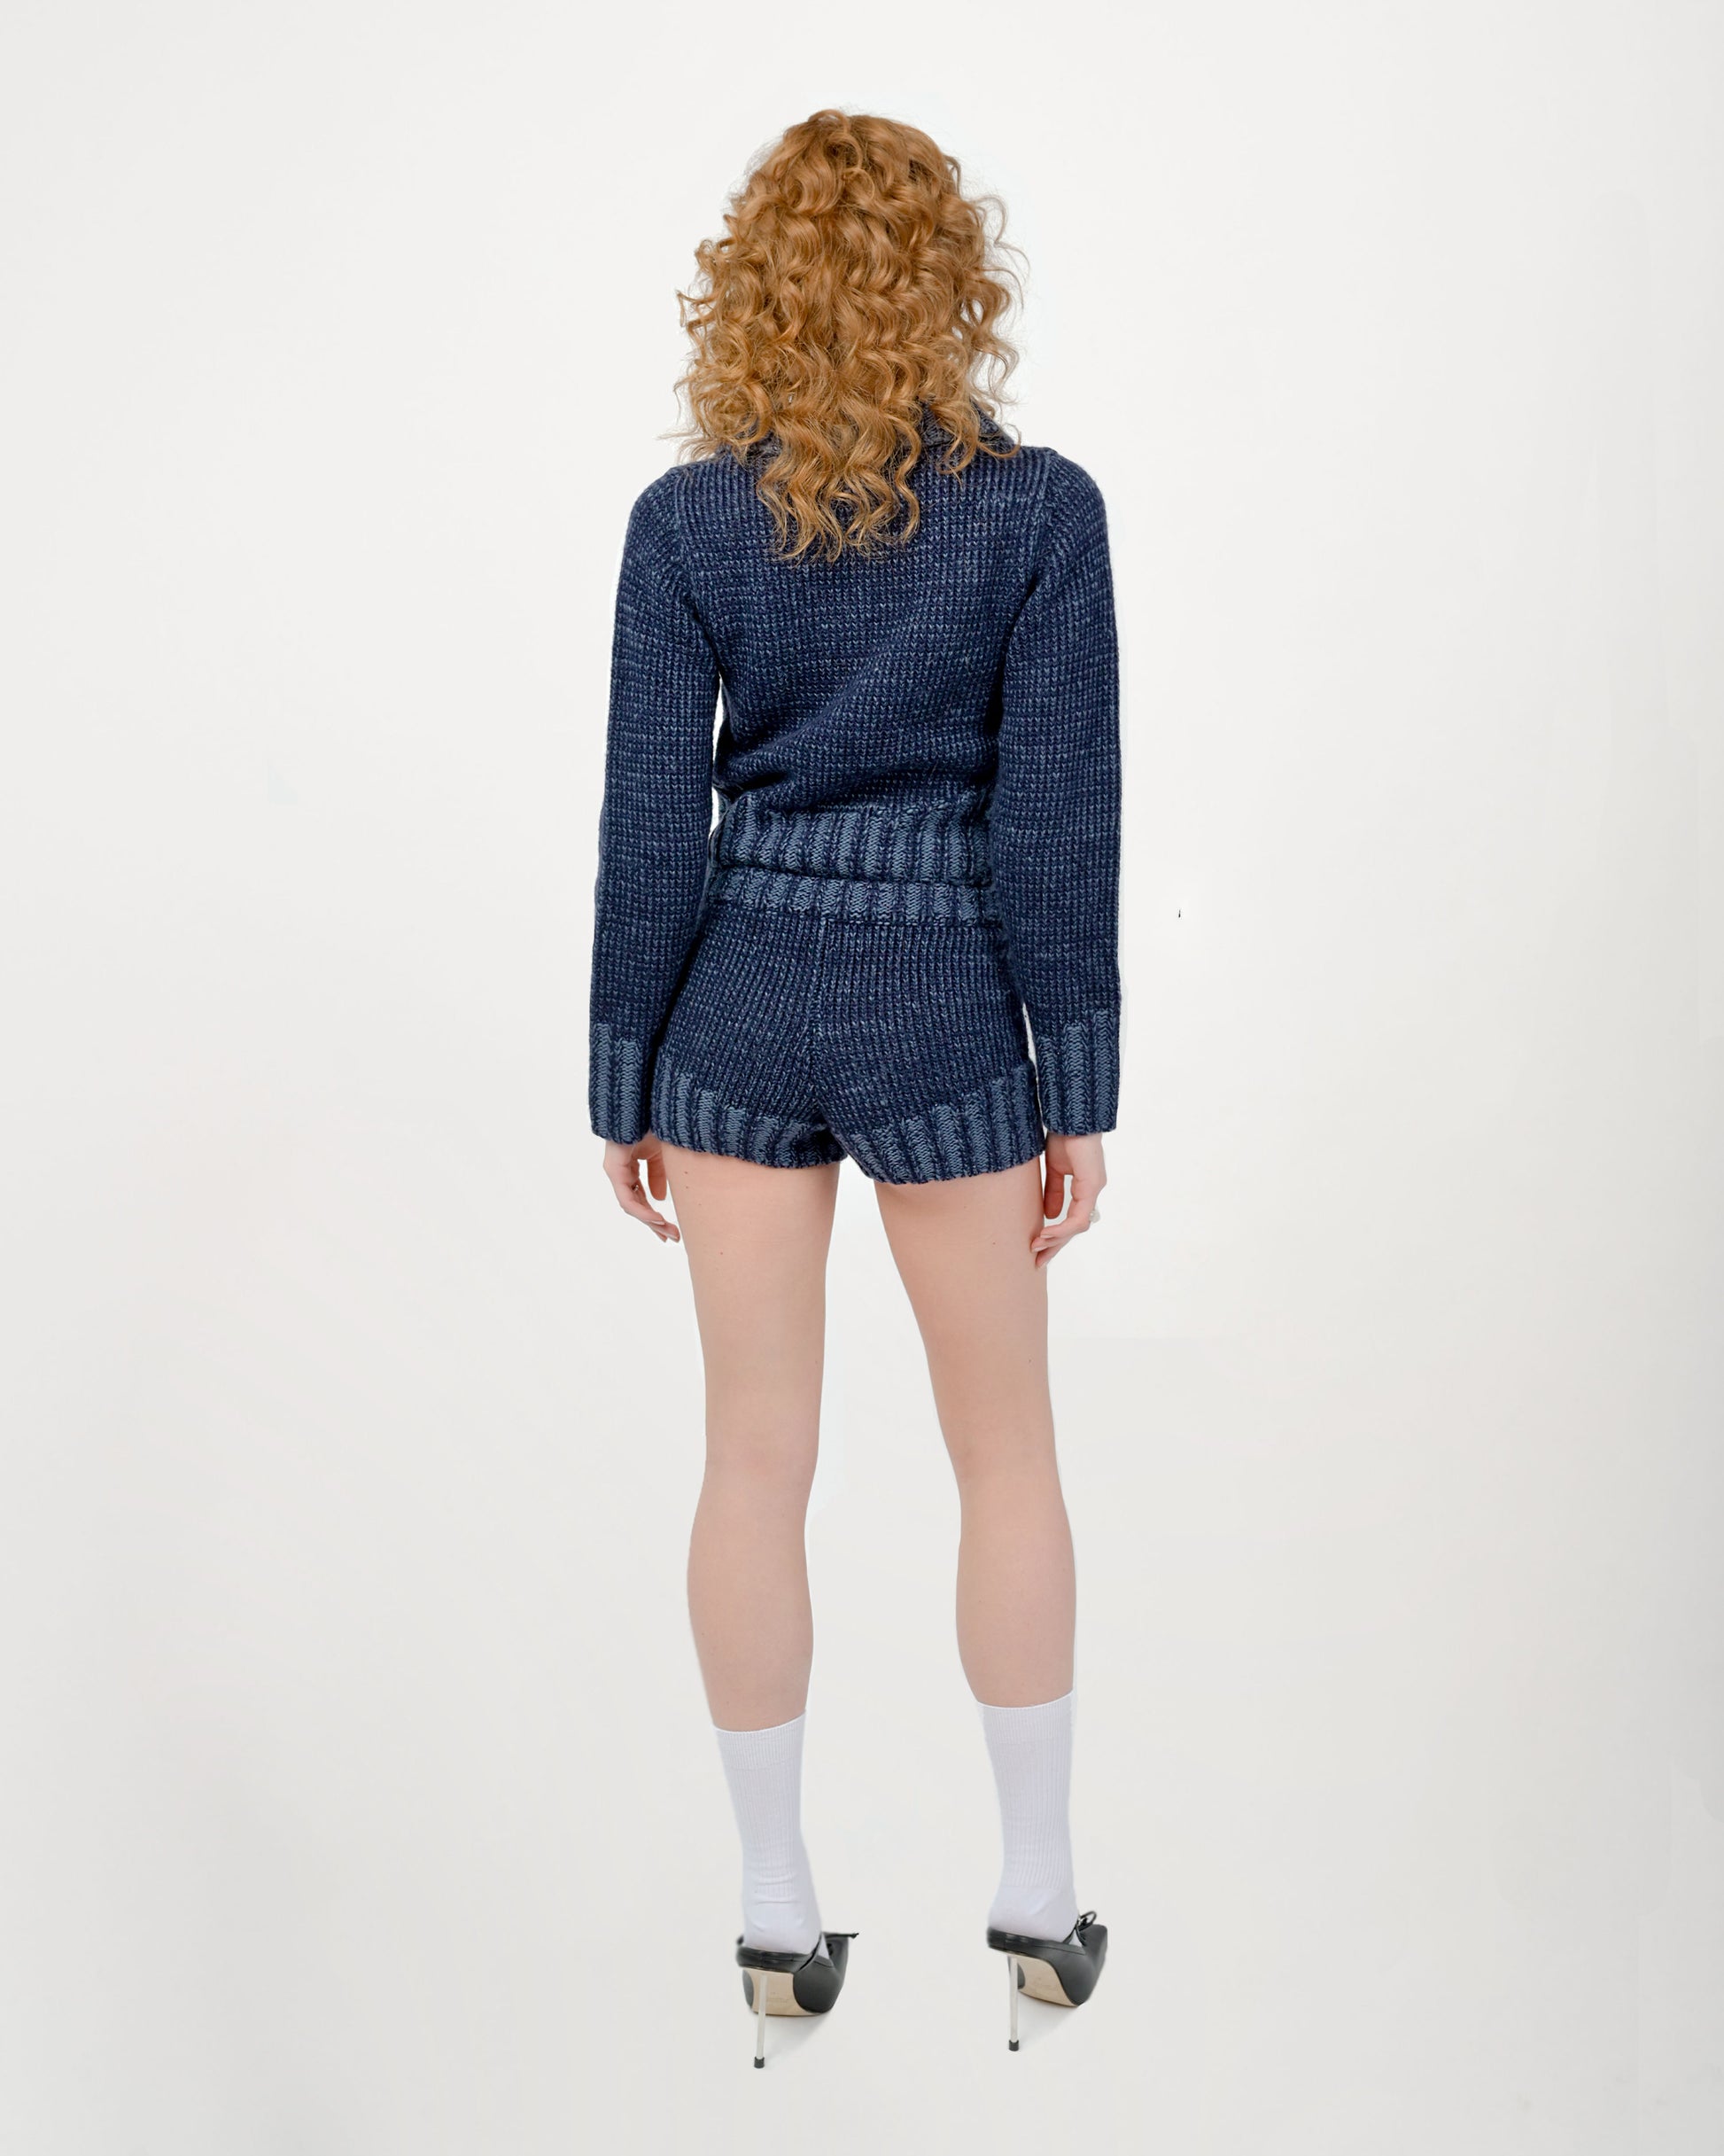 Zaya Knit Shorts Set in Denim Navy Blue by Aseye Studio